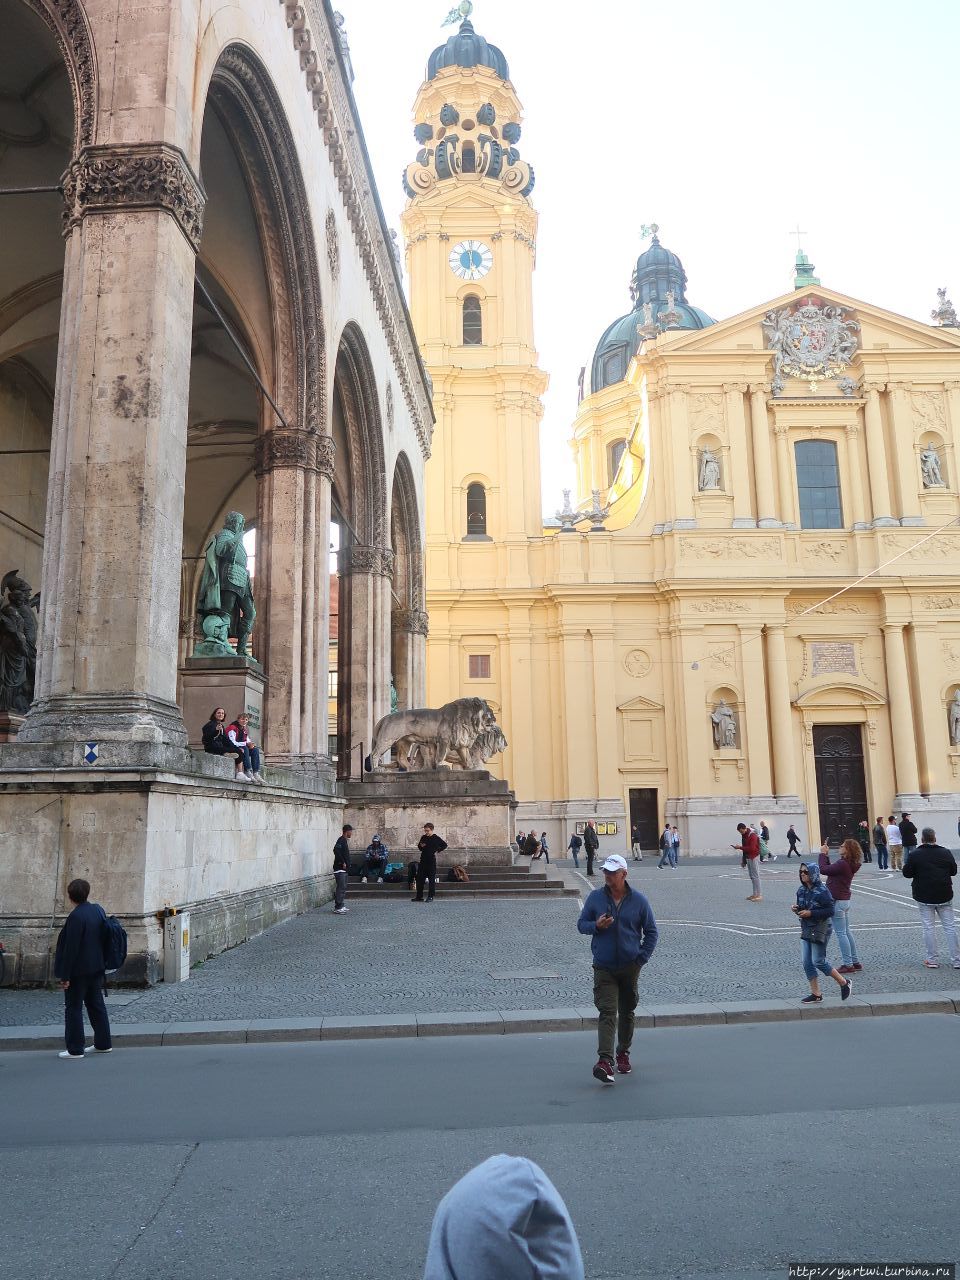 Напротив Мюнхенской резиденции видно двух больших львов из мрамора по бокам ступеней Фельдхеррнхалле. Внутри зала возвышаются бронзовые статуи графа Тилли и князя Вреде, а также памятник баварской армии. Мюнхен, Германия